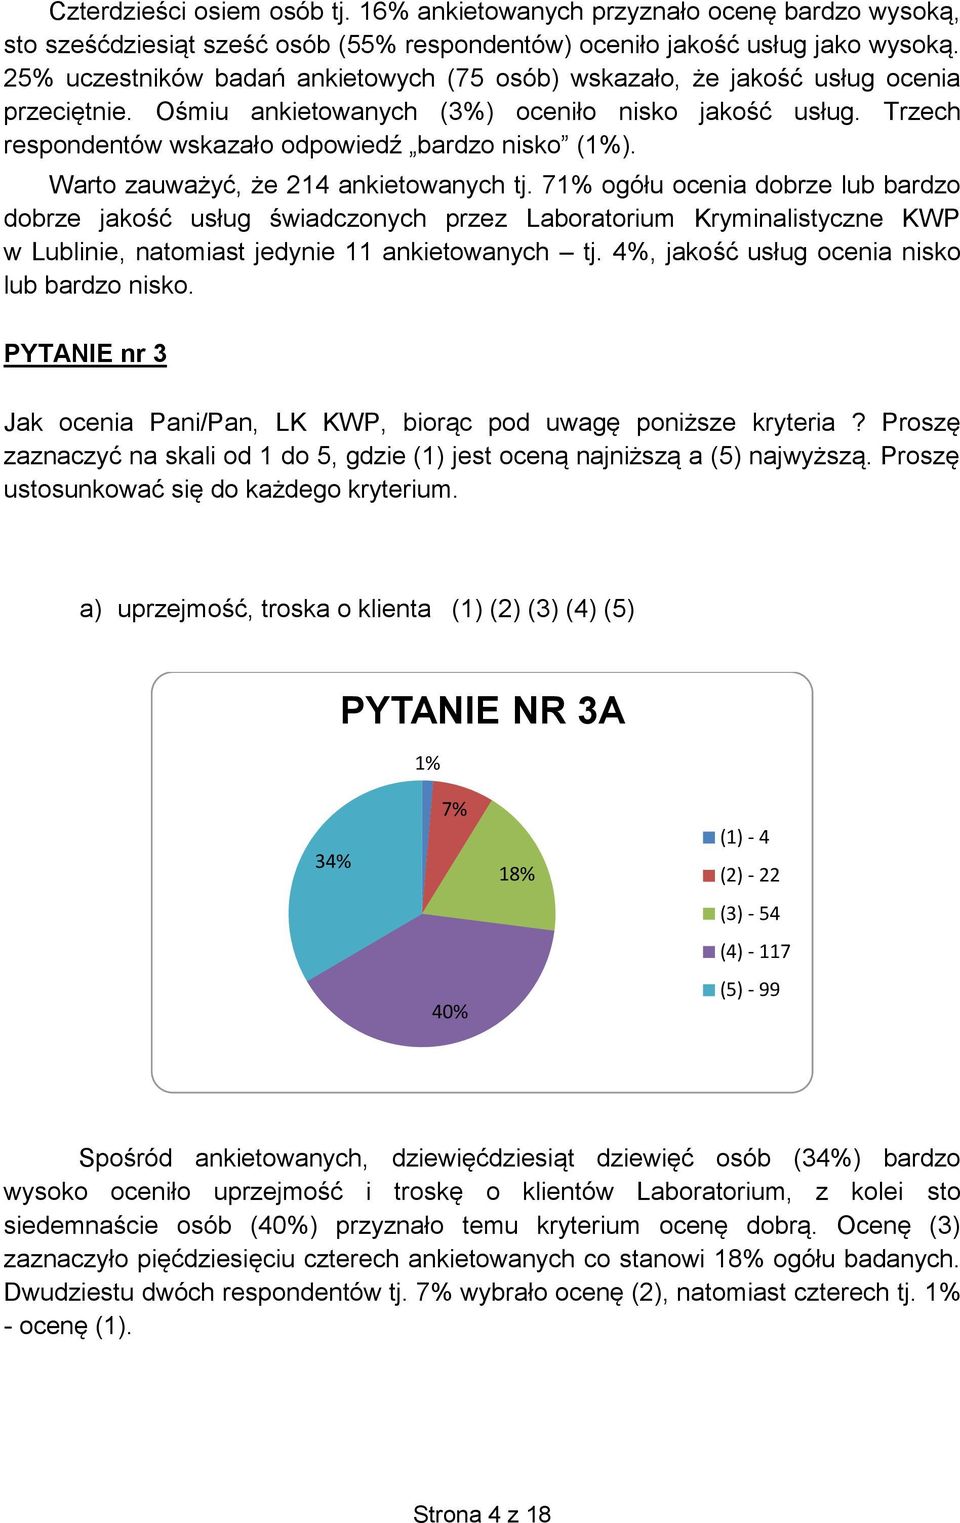 Warto zauważyć, że 214 ankietowanych tj. 71% ogółu ocenia dobrze lub bardzo dobrze jakość usług świadczonych przez Laboratorium Kryminalistyczne KWP w Lublinie, natomiast jedynie 11 ankietowanych tj.